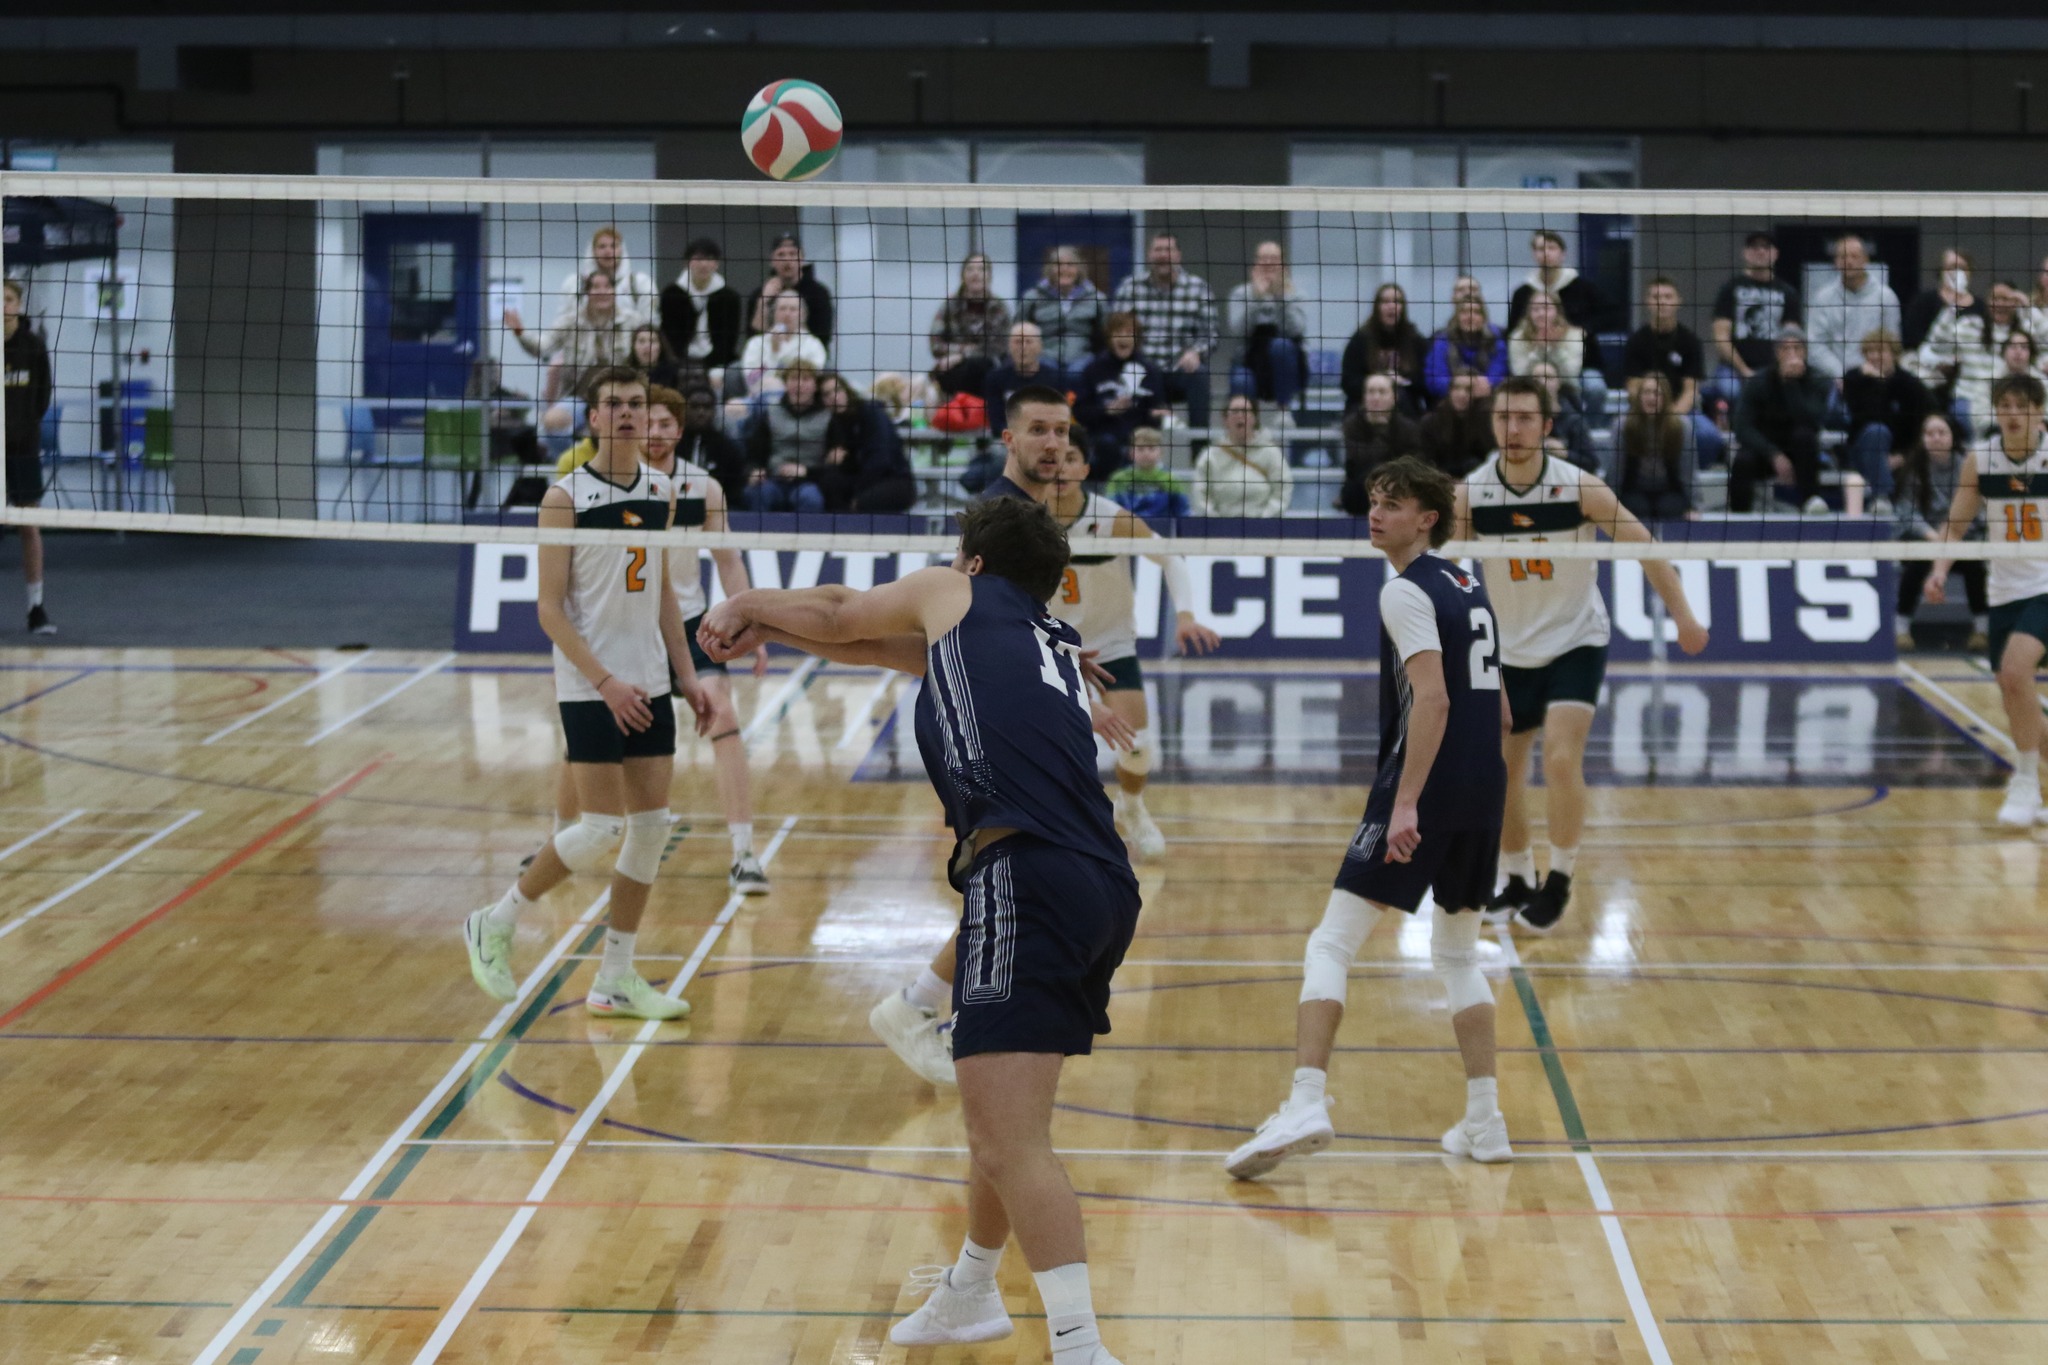 L’ACSC choisit Providence University College comme hôte du Championnat de volleyball masculin 2025 de l’ACSC